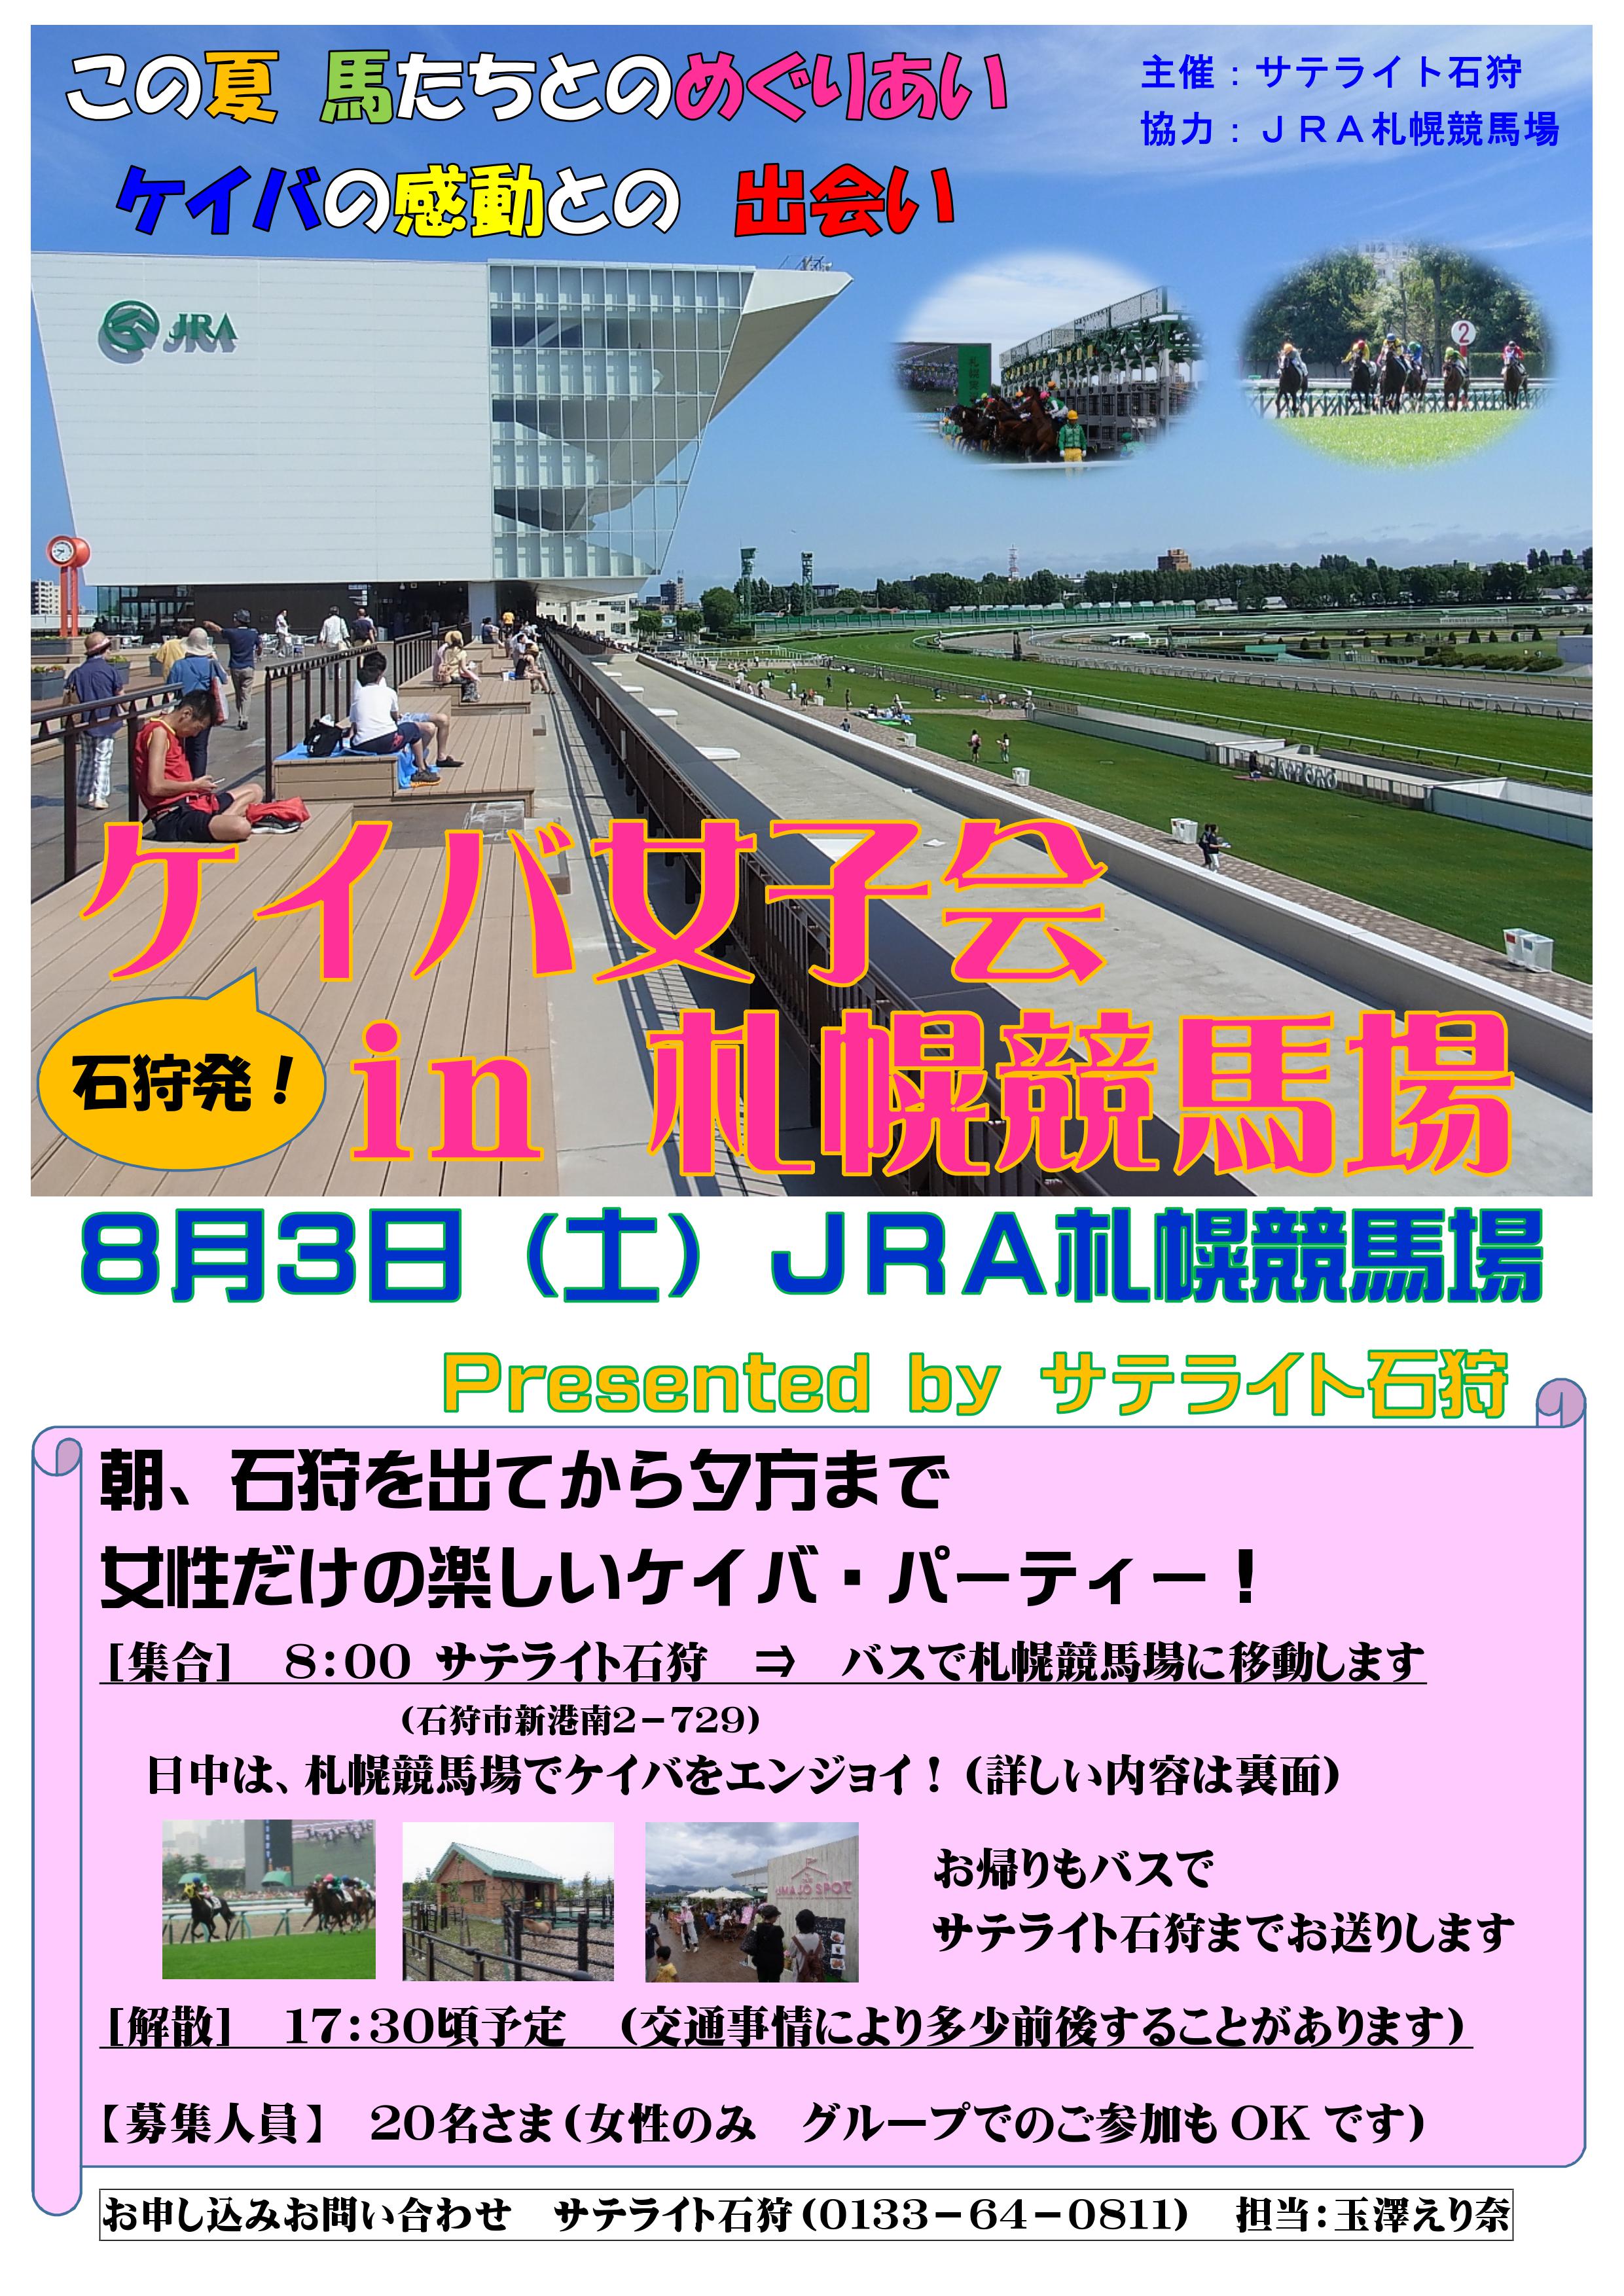 札幌 競馬 イベント